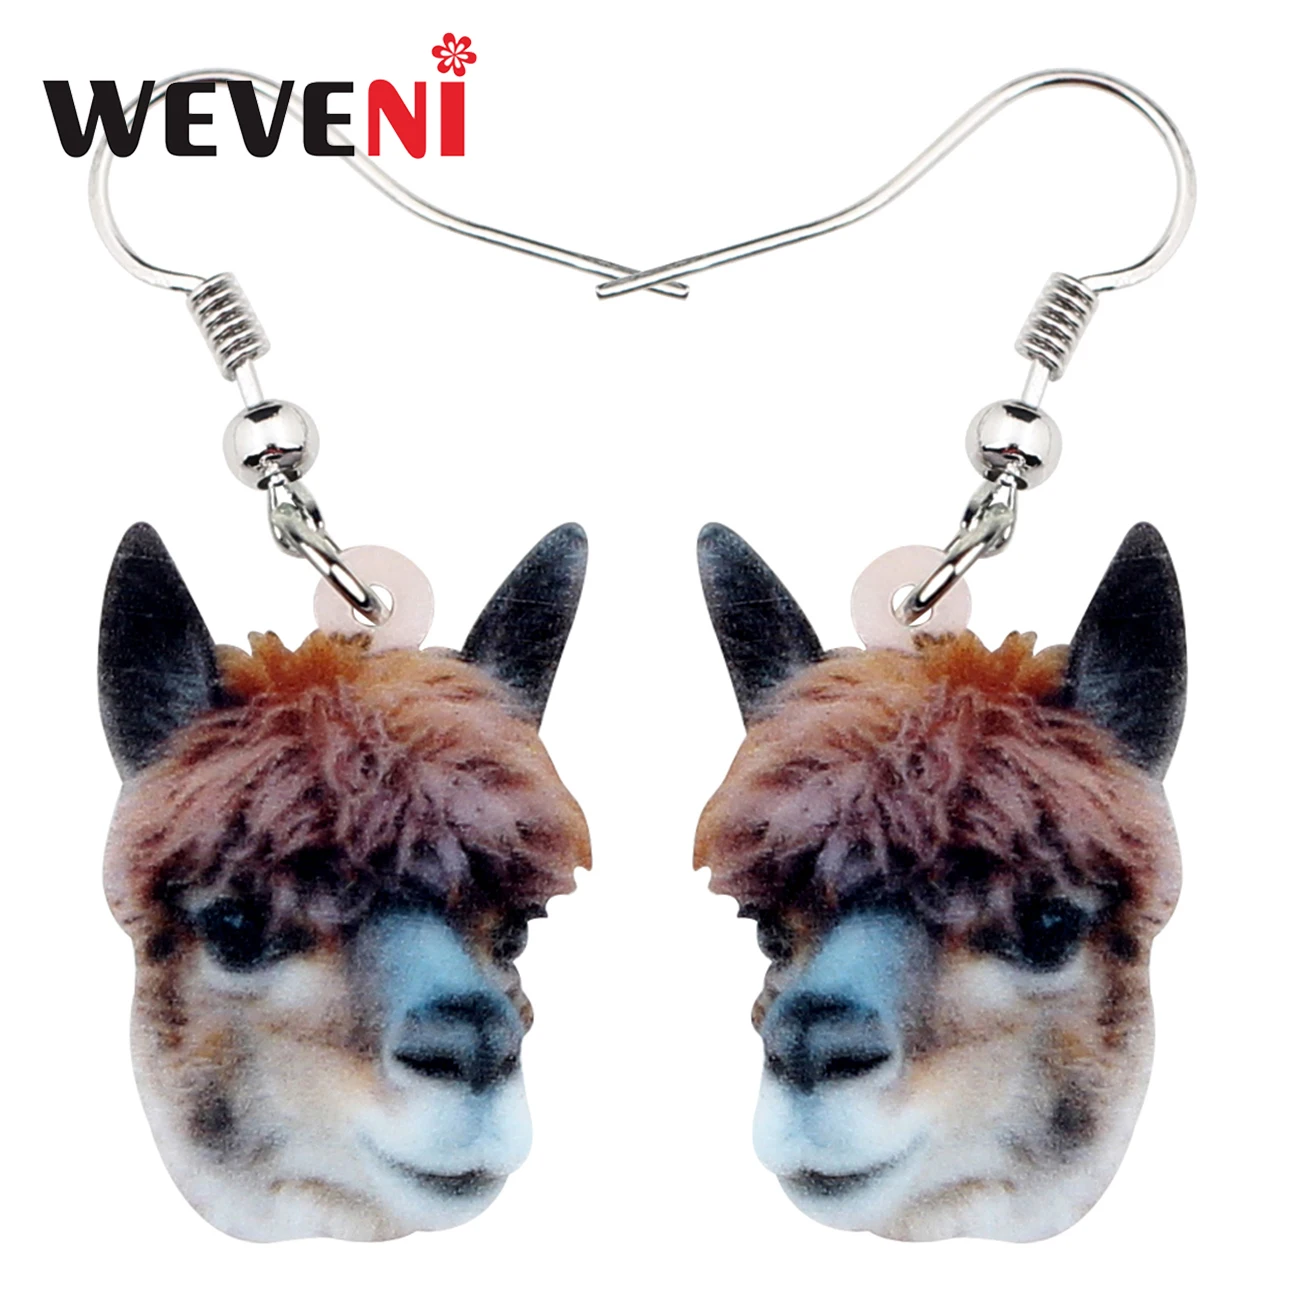 Acrylic Sweet Alpaca Llama Earrings Drop Dangle American Animal Jewelry For Women Girls Gift Drop Earrings 